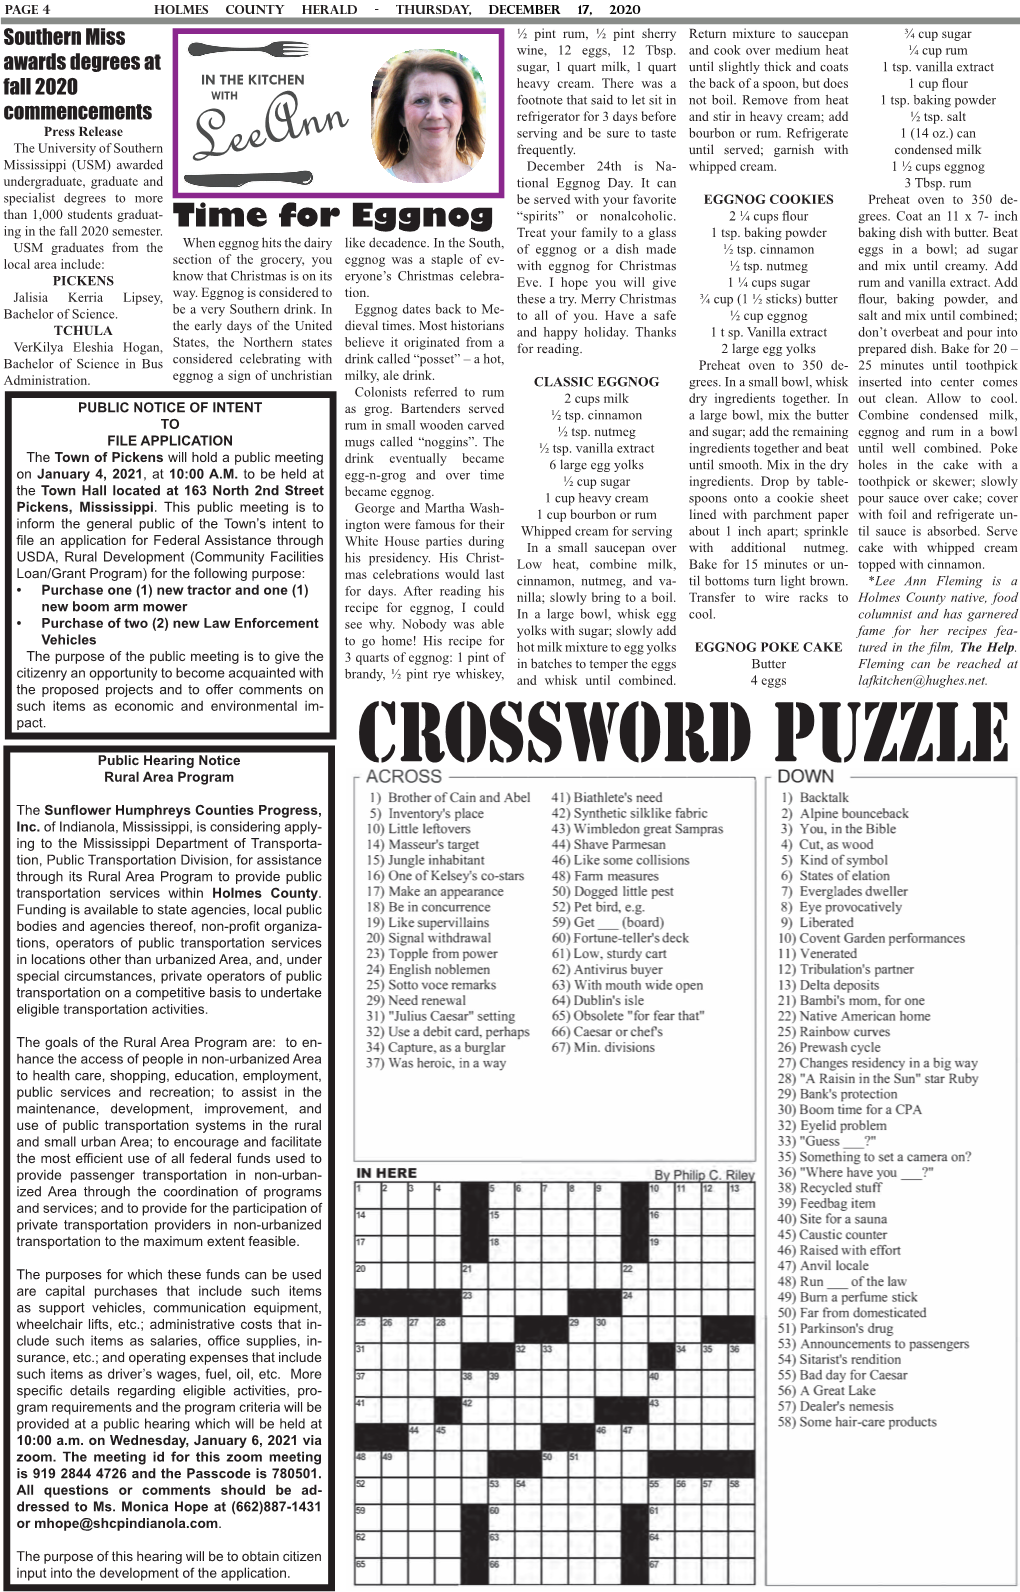 Crossword Puzzle Rural Area Program